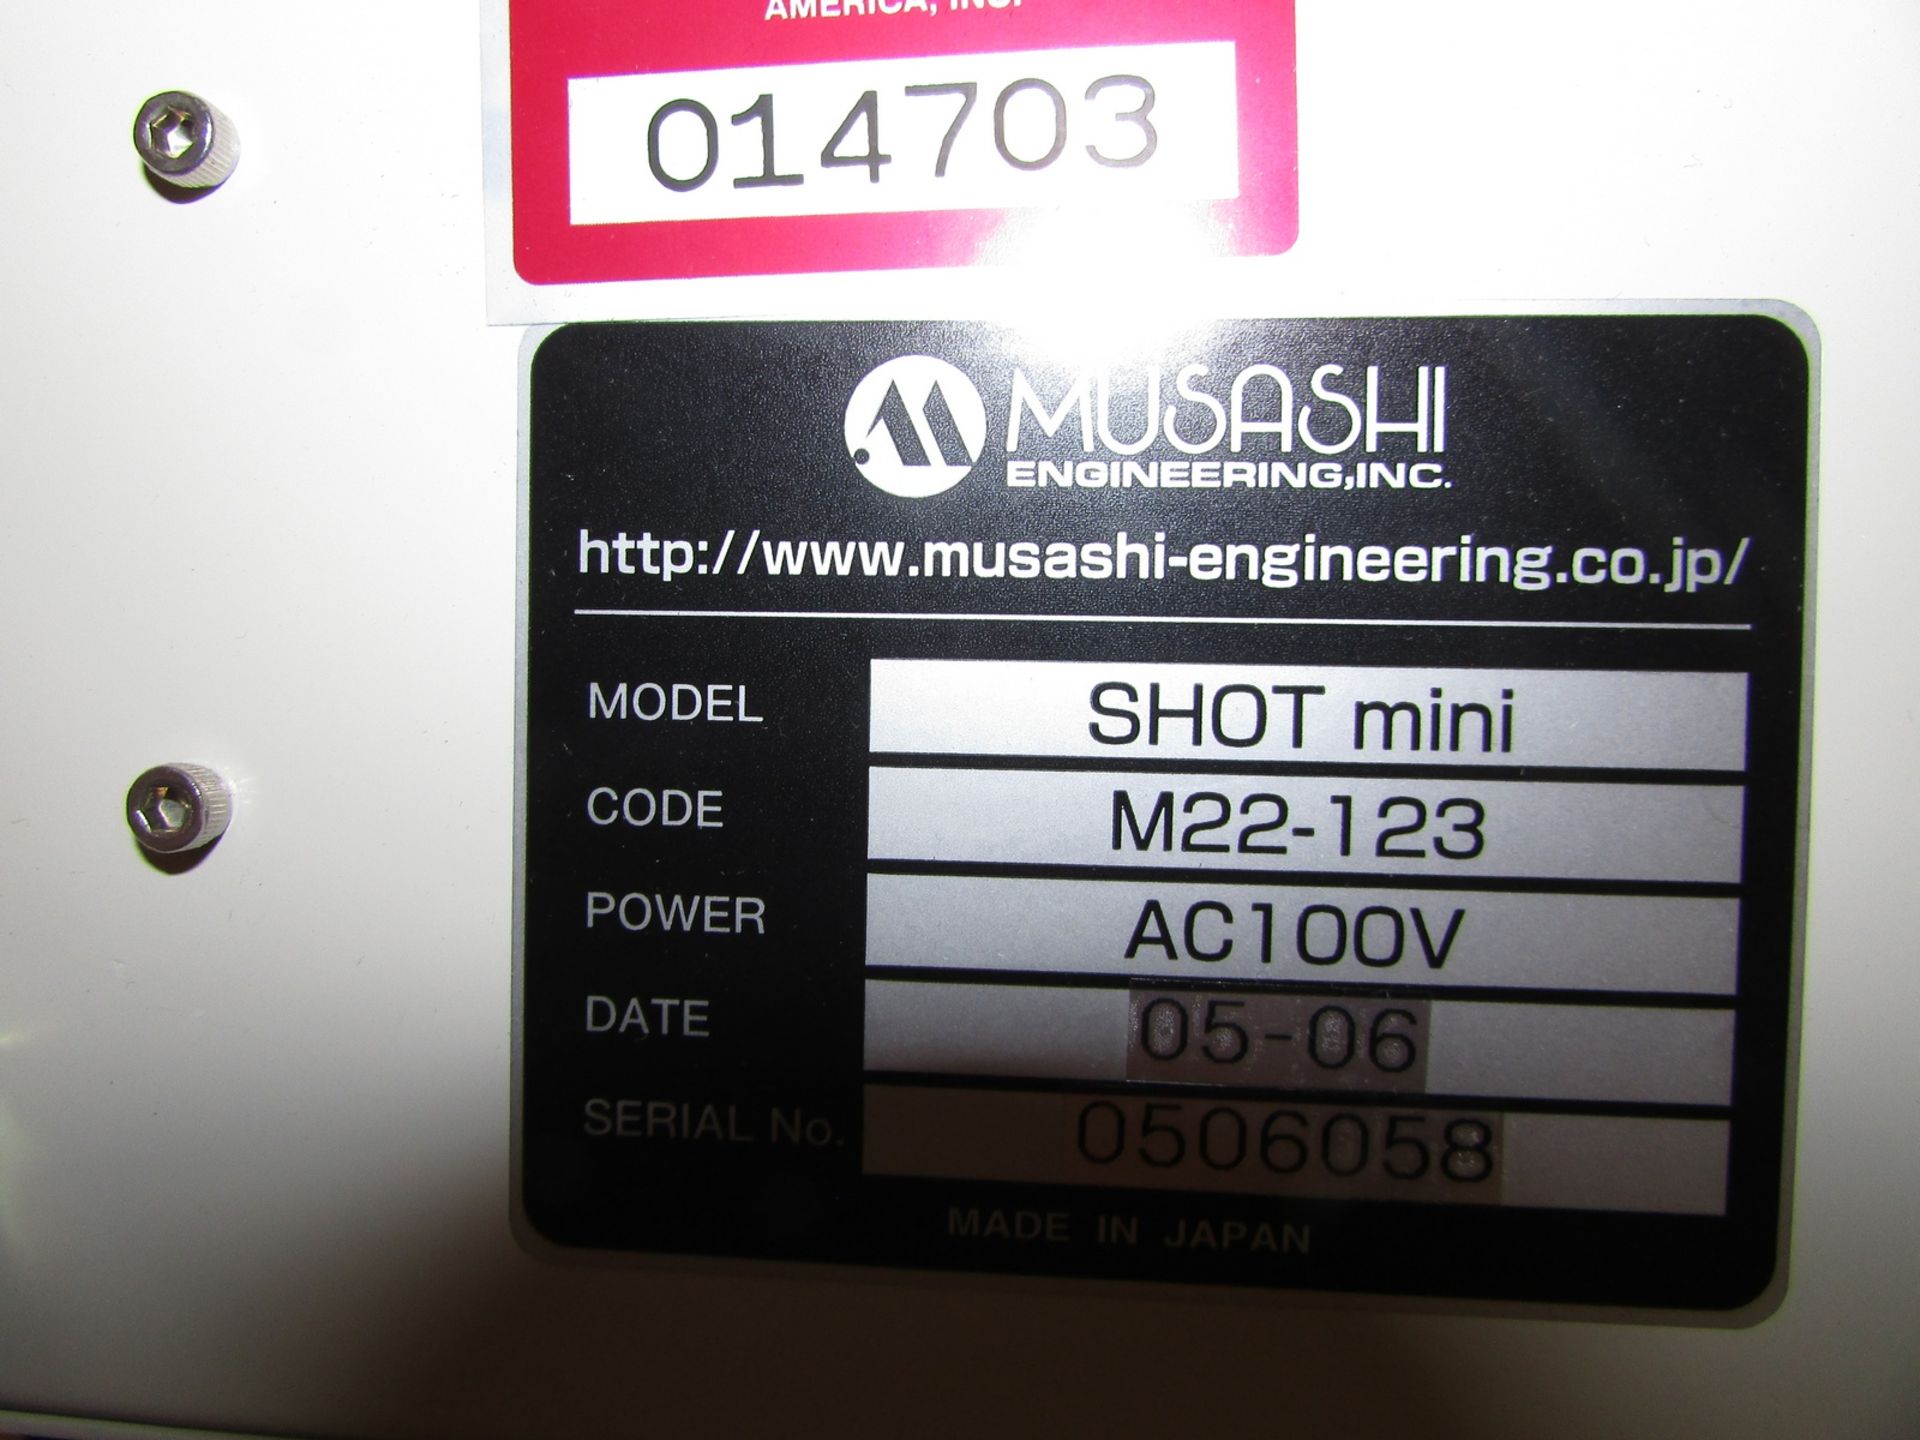 2006 Musashi Engineering SHOT mini SL M22-123 3 Axis Robotic Gel Applicator System 100V 50/60Hz - Image 8 of 12